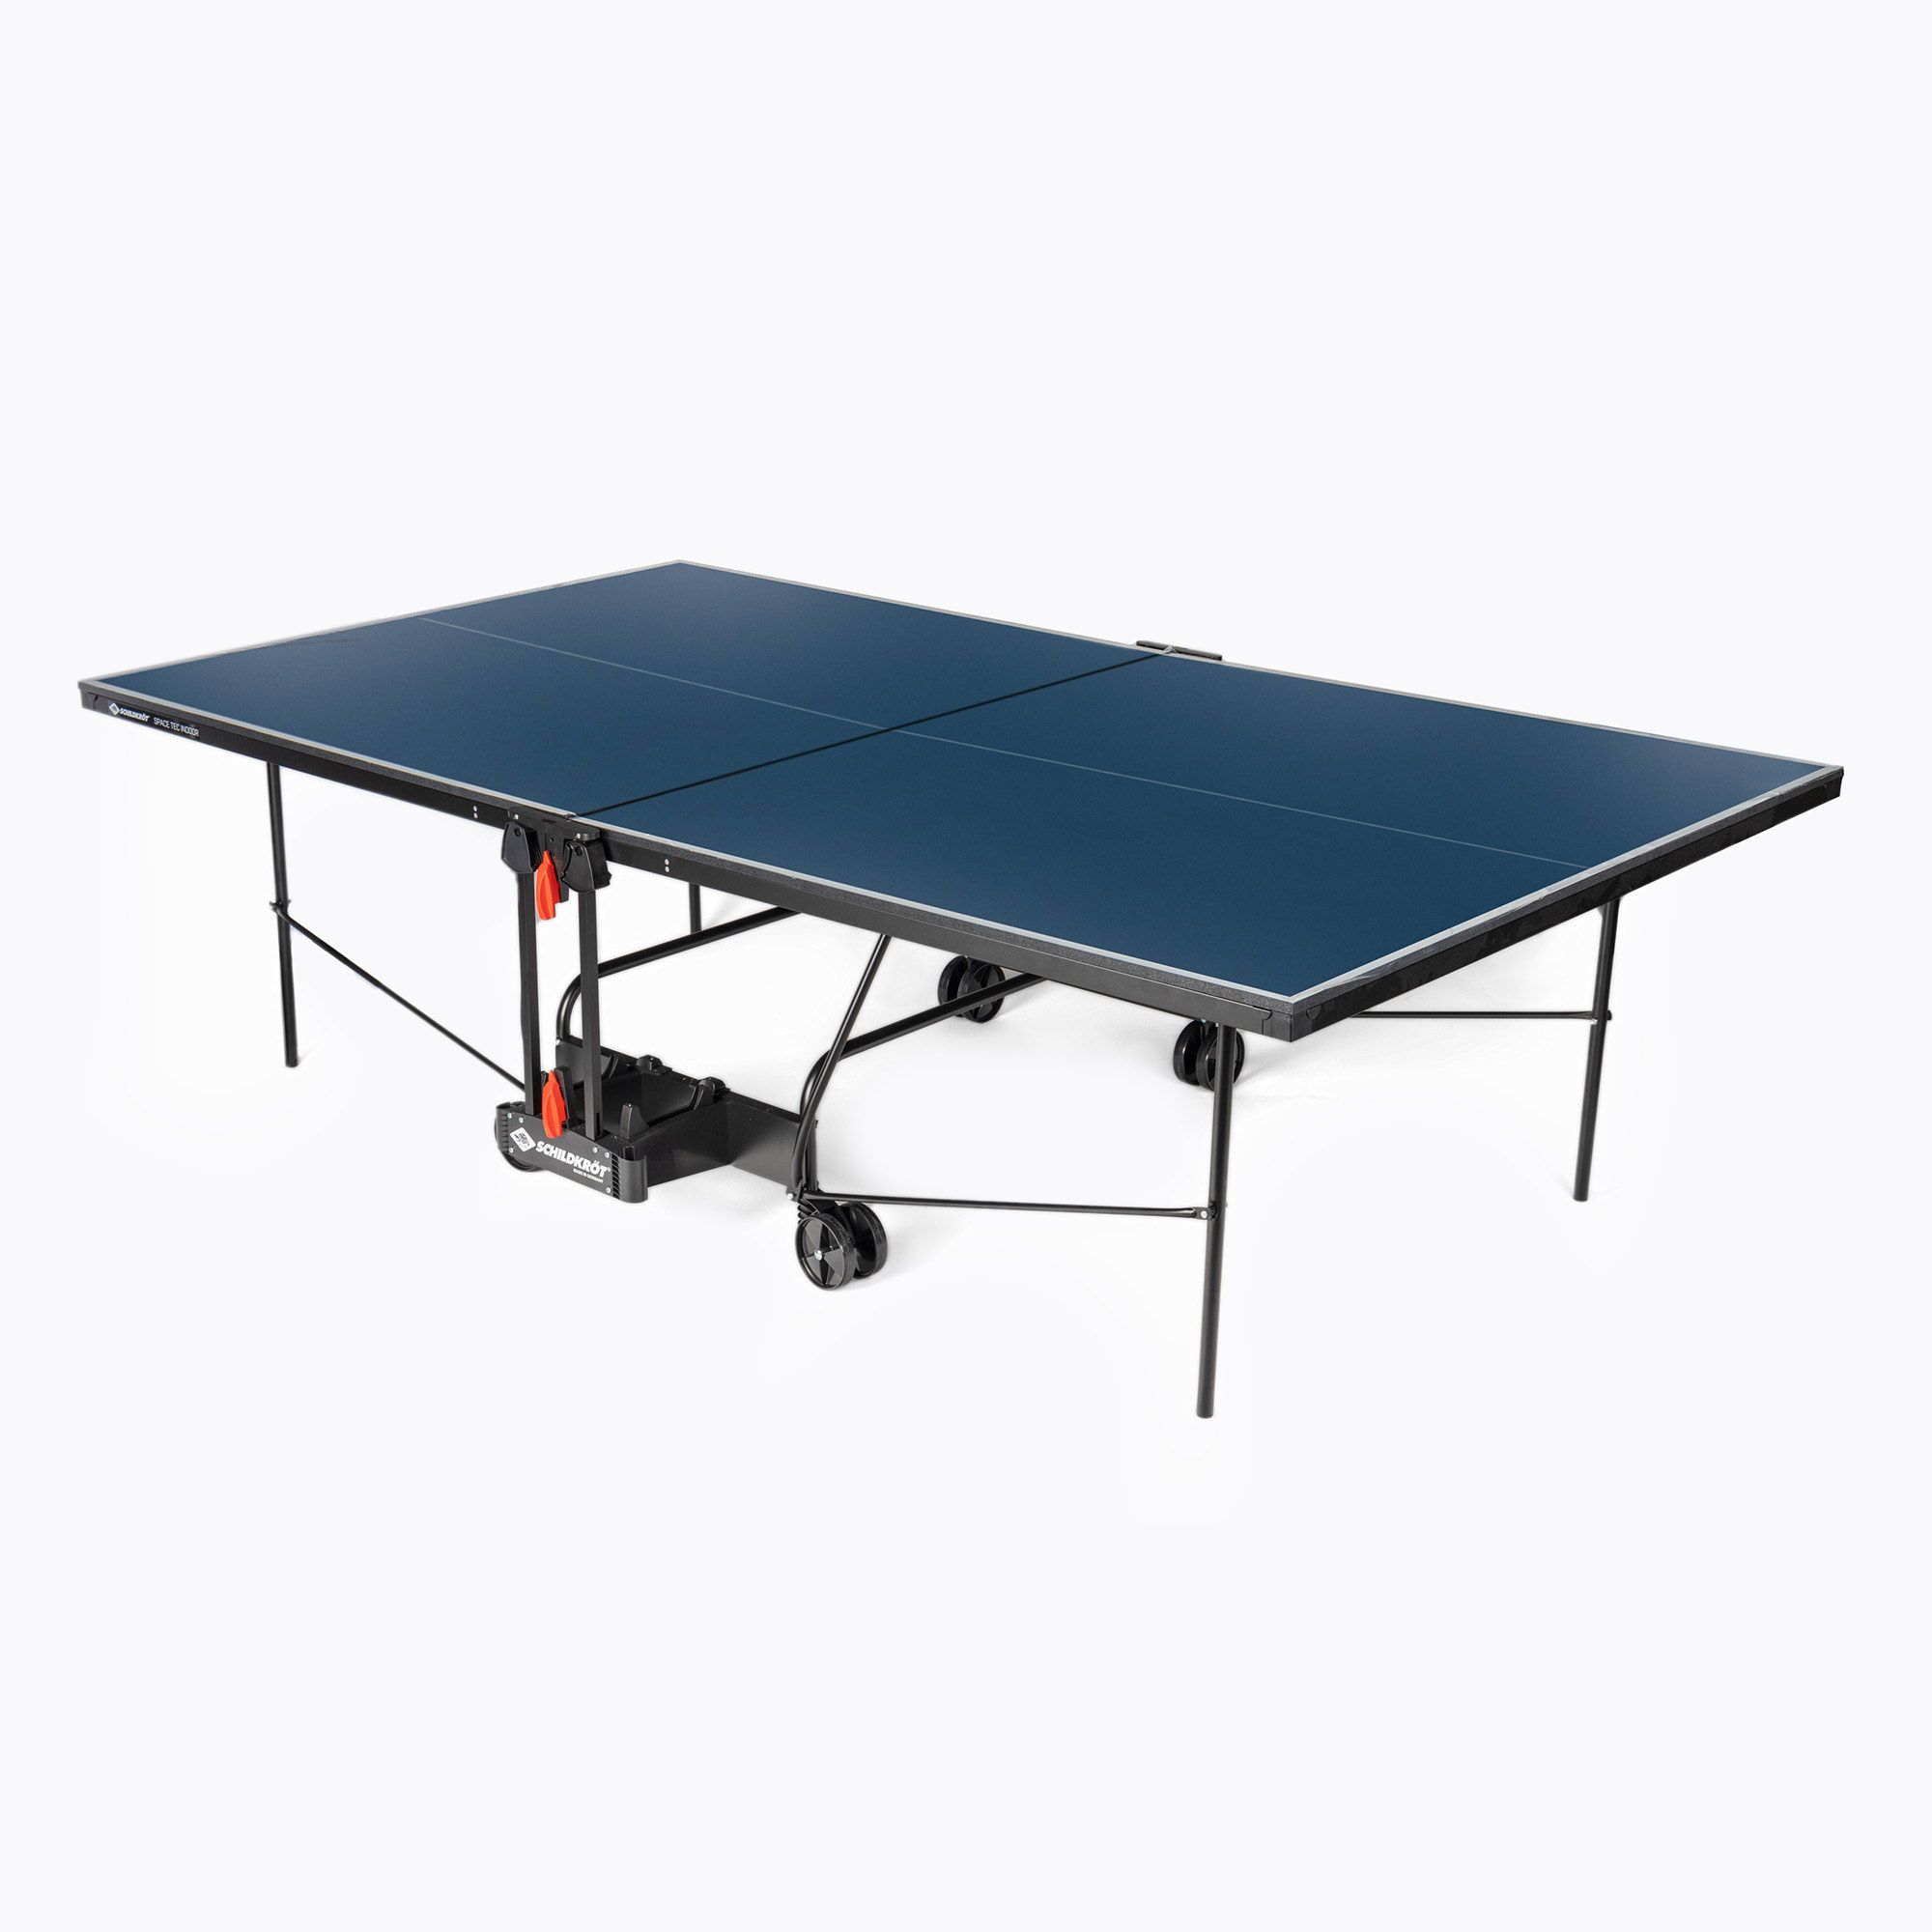 SpaceTec Schildkröt tennis 838546 Indoor table blue table